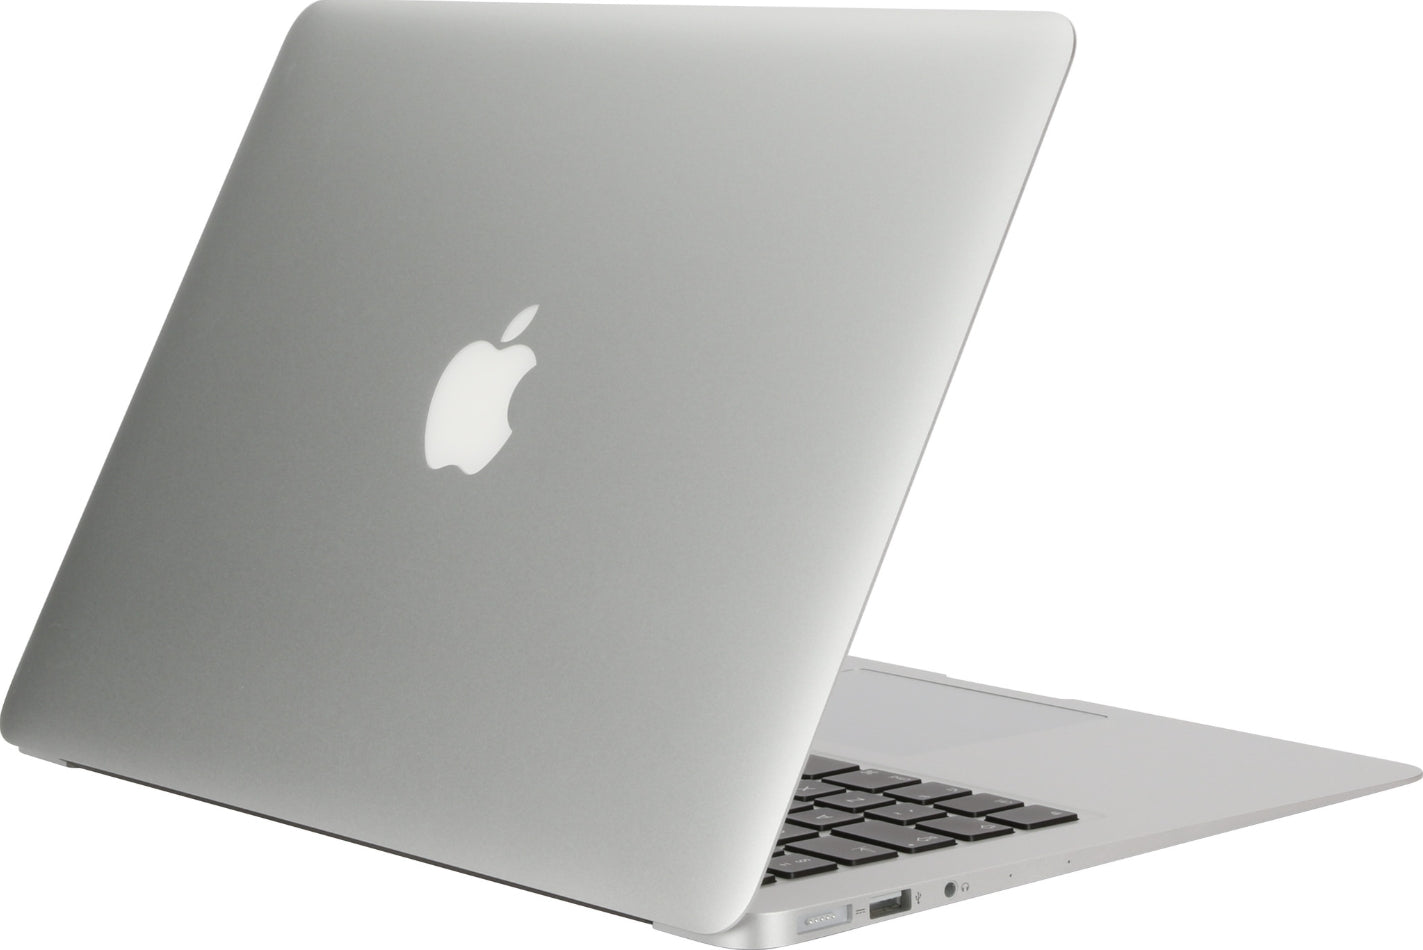 MacBook Air 2017 - 13 inch - Core i5 - 8GB RAM - 128GB SSD